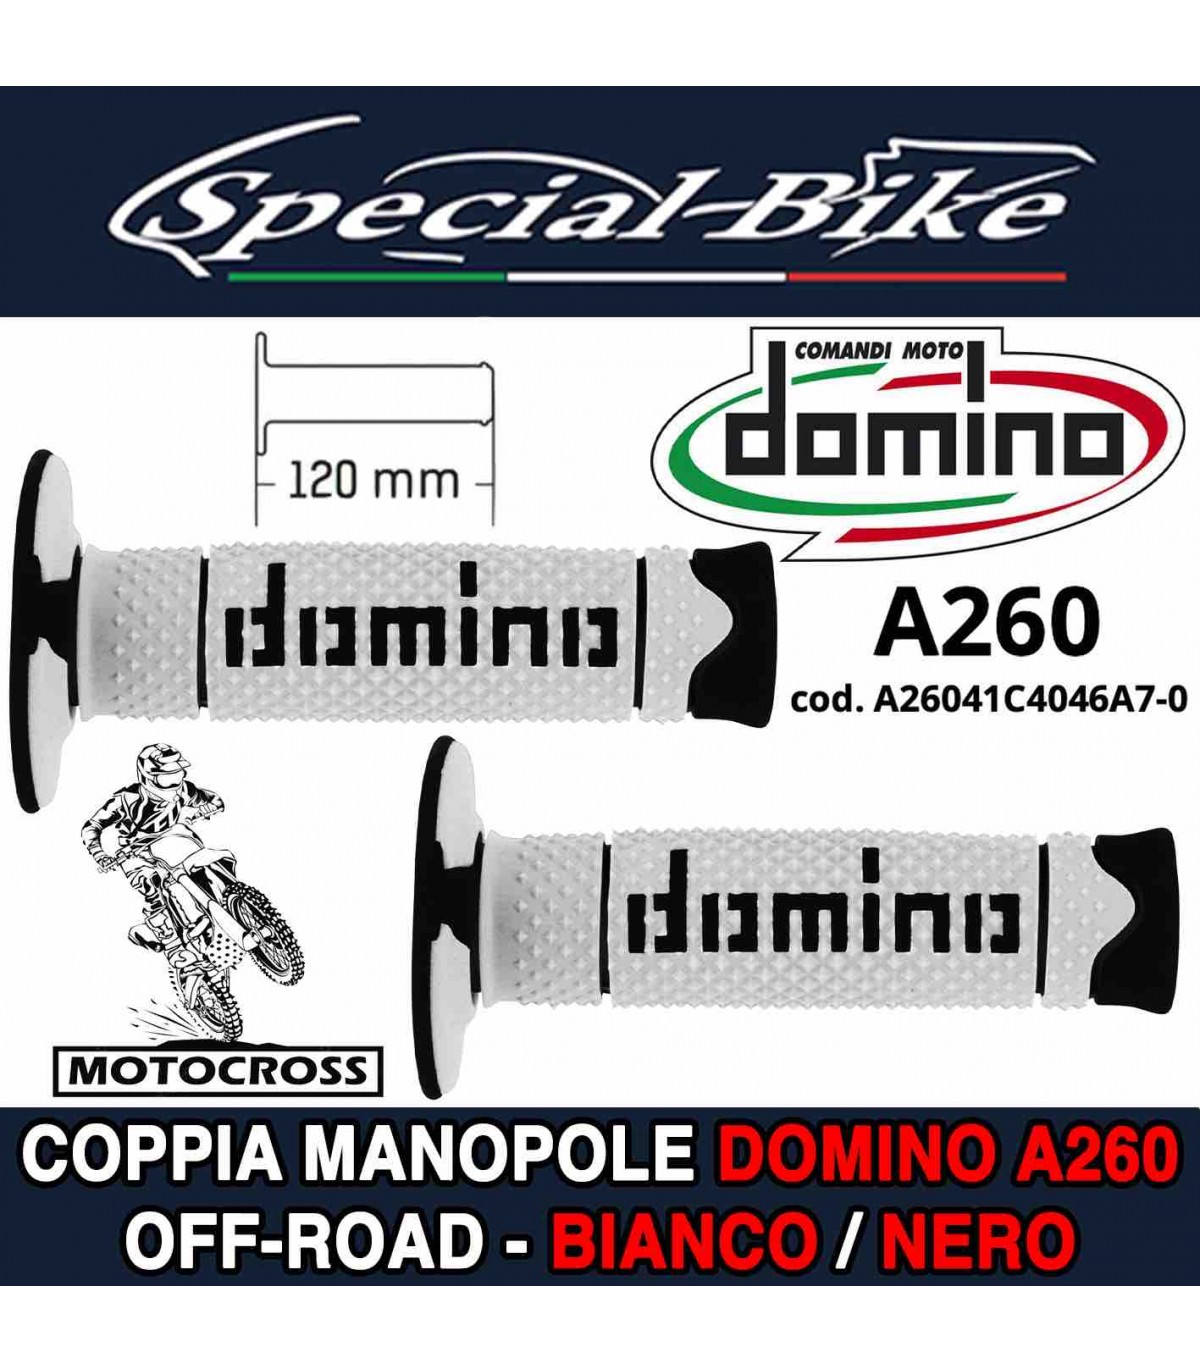 Coppia Manopole Moto Off-Road Domino A190 Blu Grigio